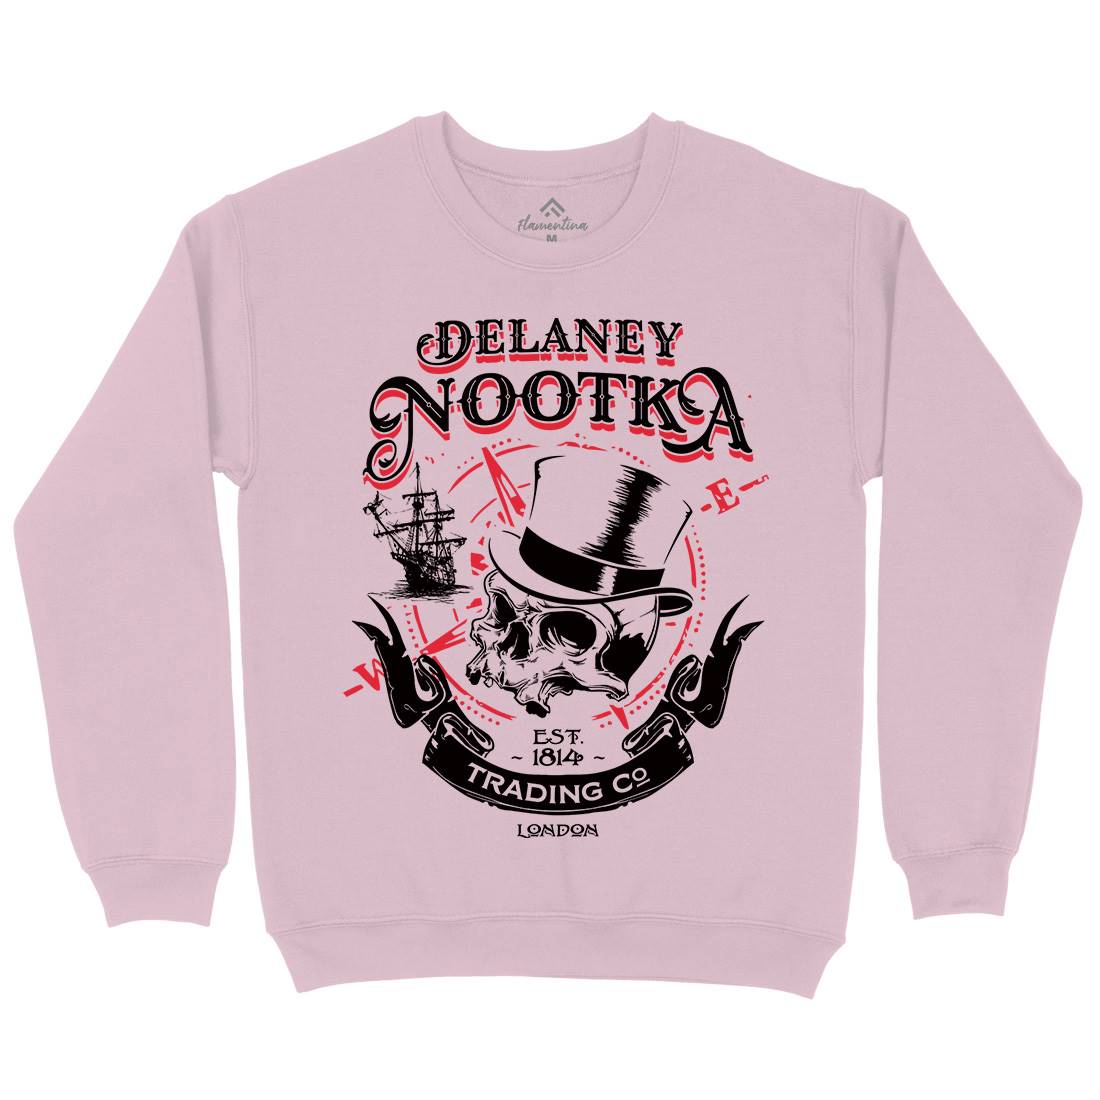 Delaney Nootka Kids Crew Neck Sweatshirt Retro D183